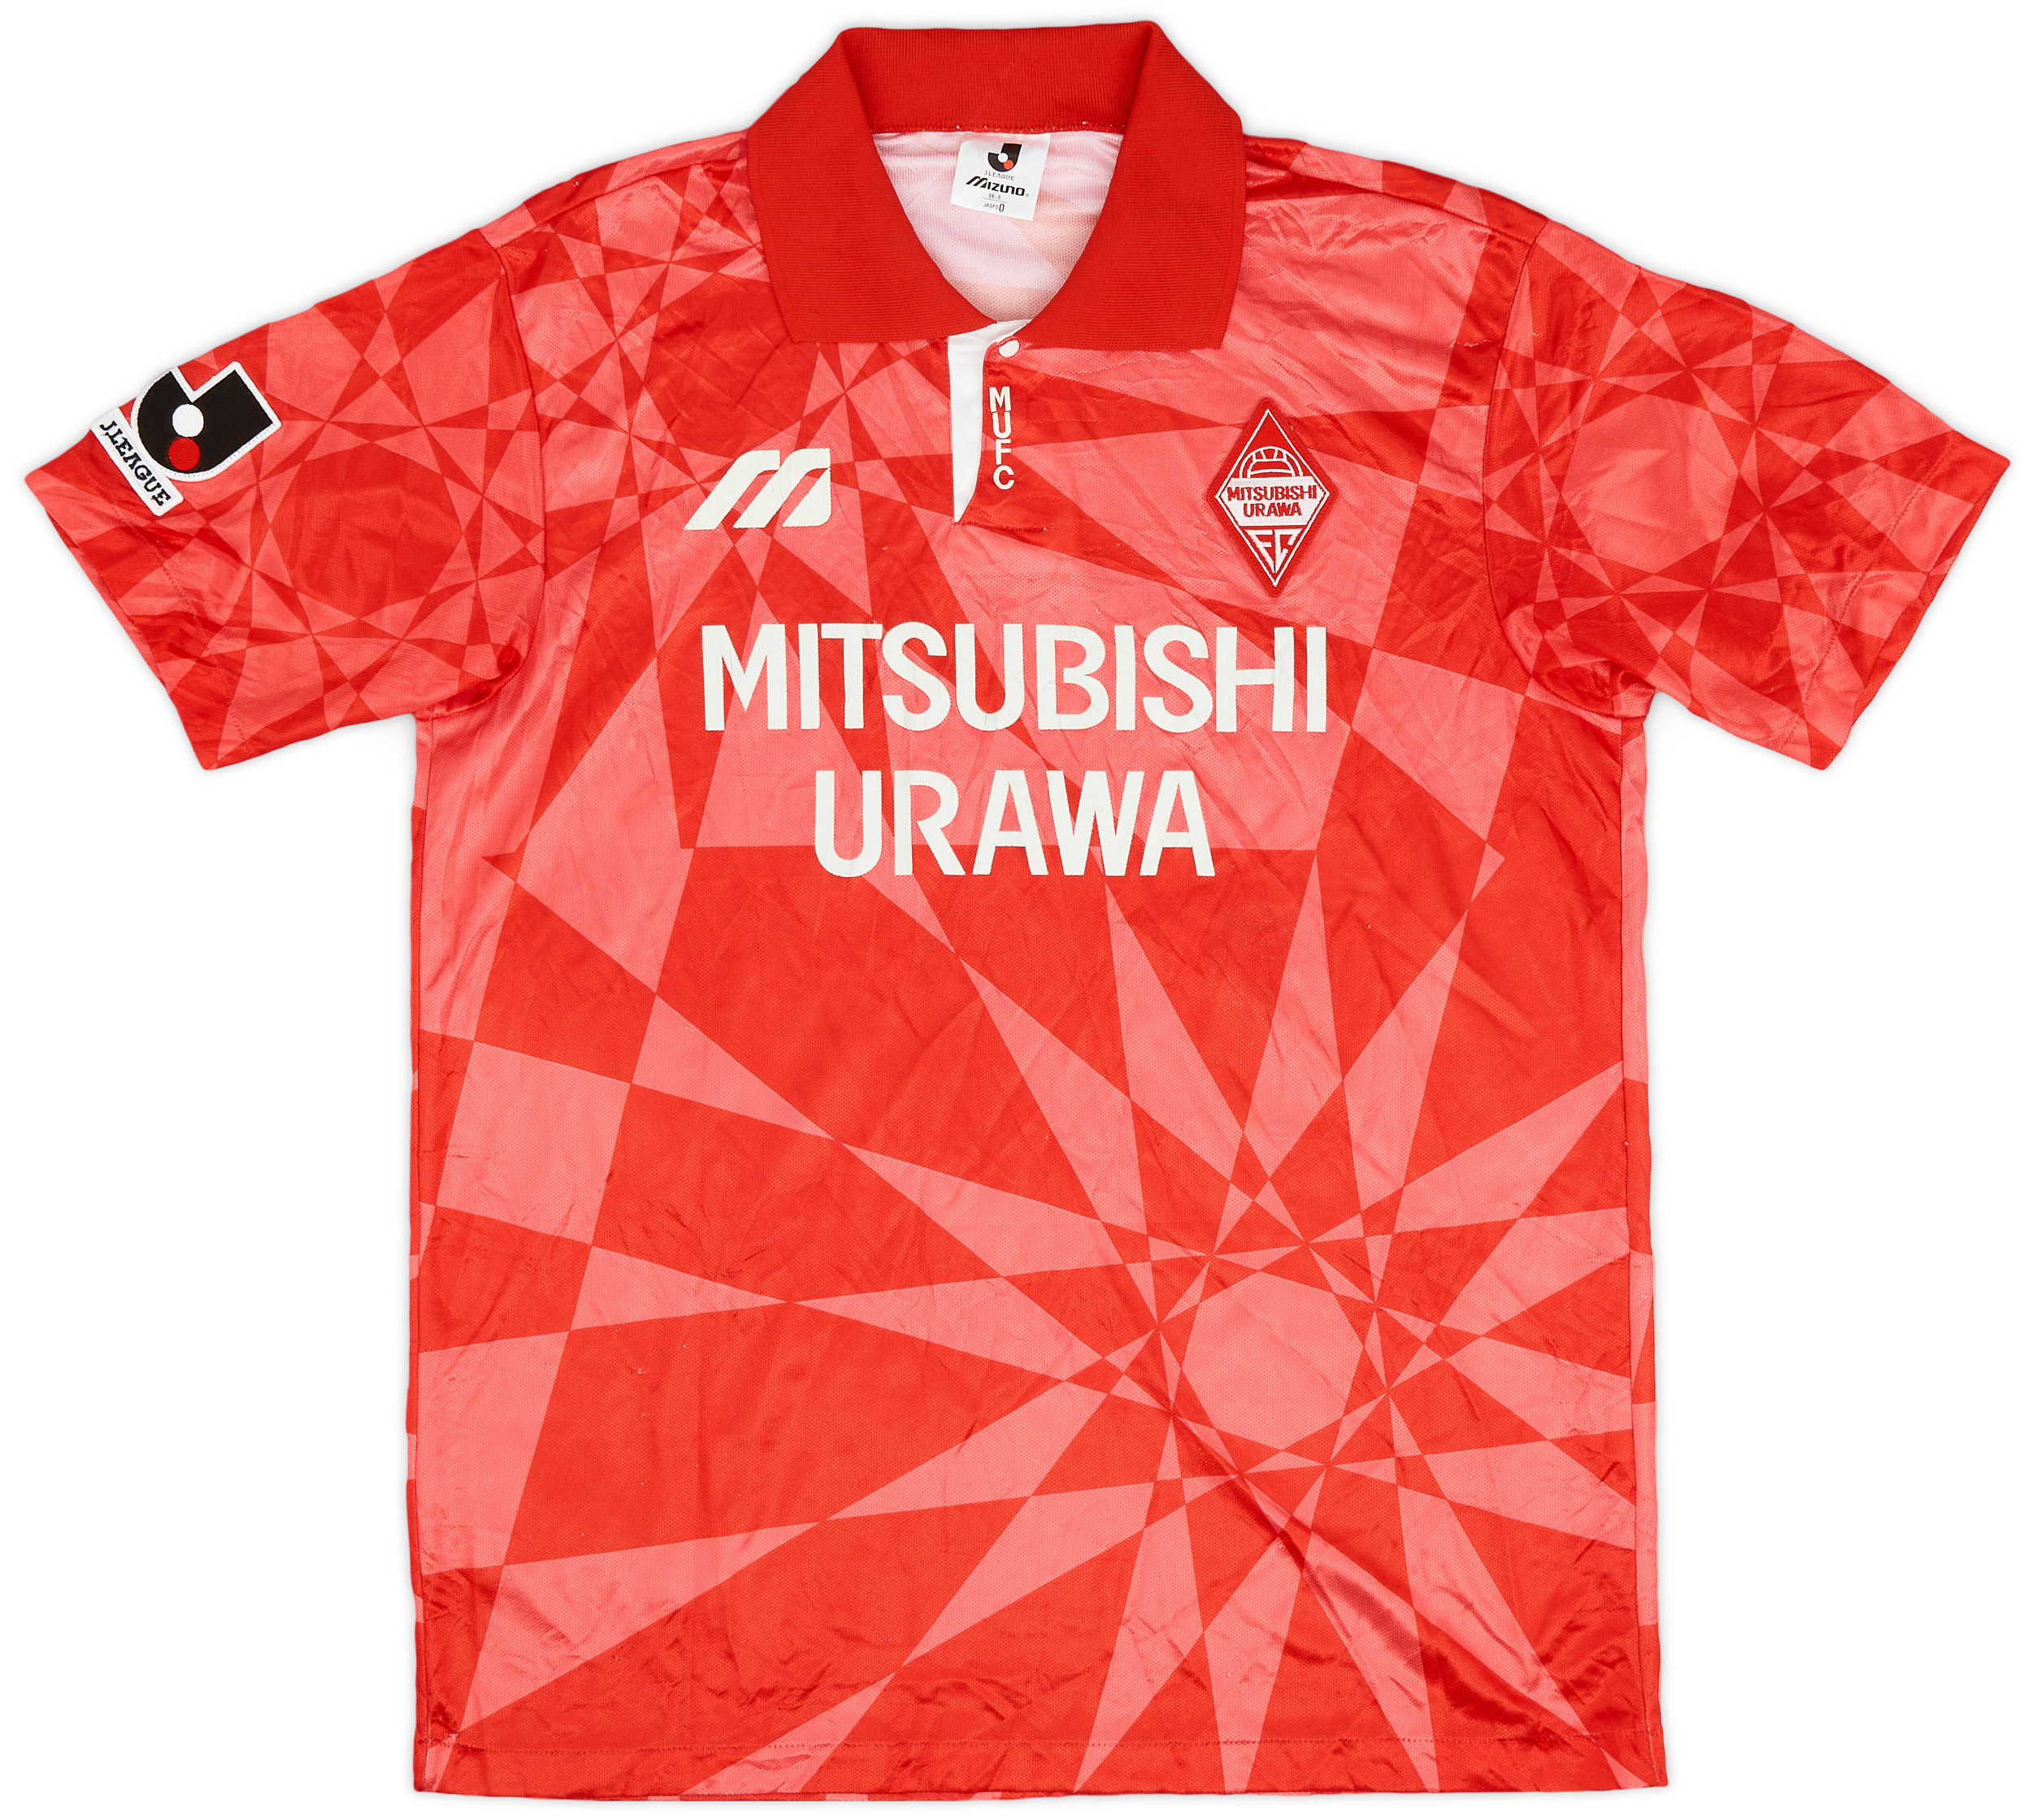 Retro Urawa Red Diamonds Shirt